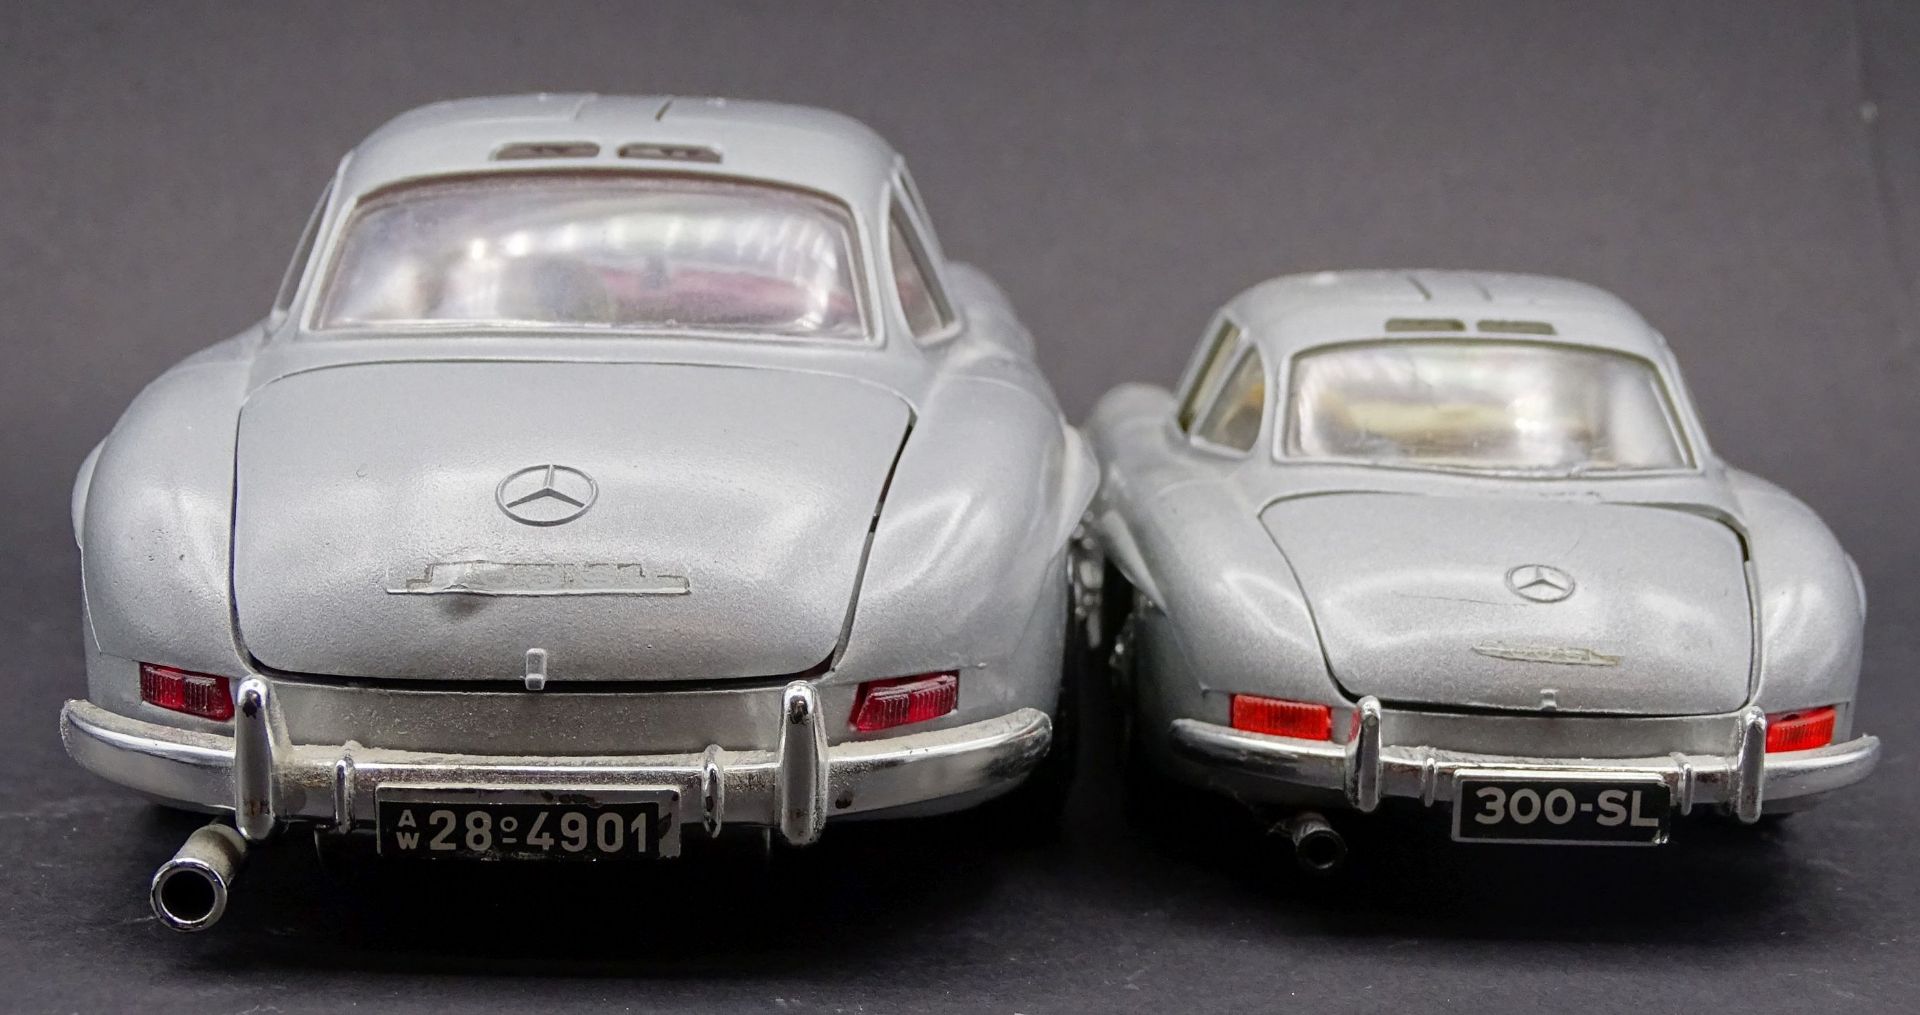 2x Automodelle Mercedes Benz 300 SL, 1: 1:18, 1x 1:24, beide Burago - Bild 4 aus 6